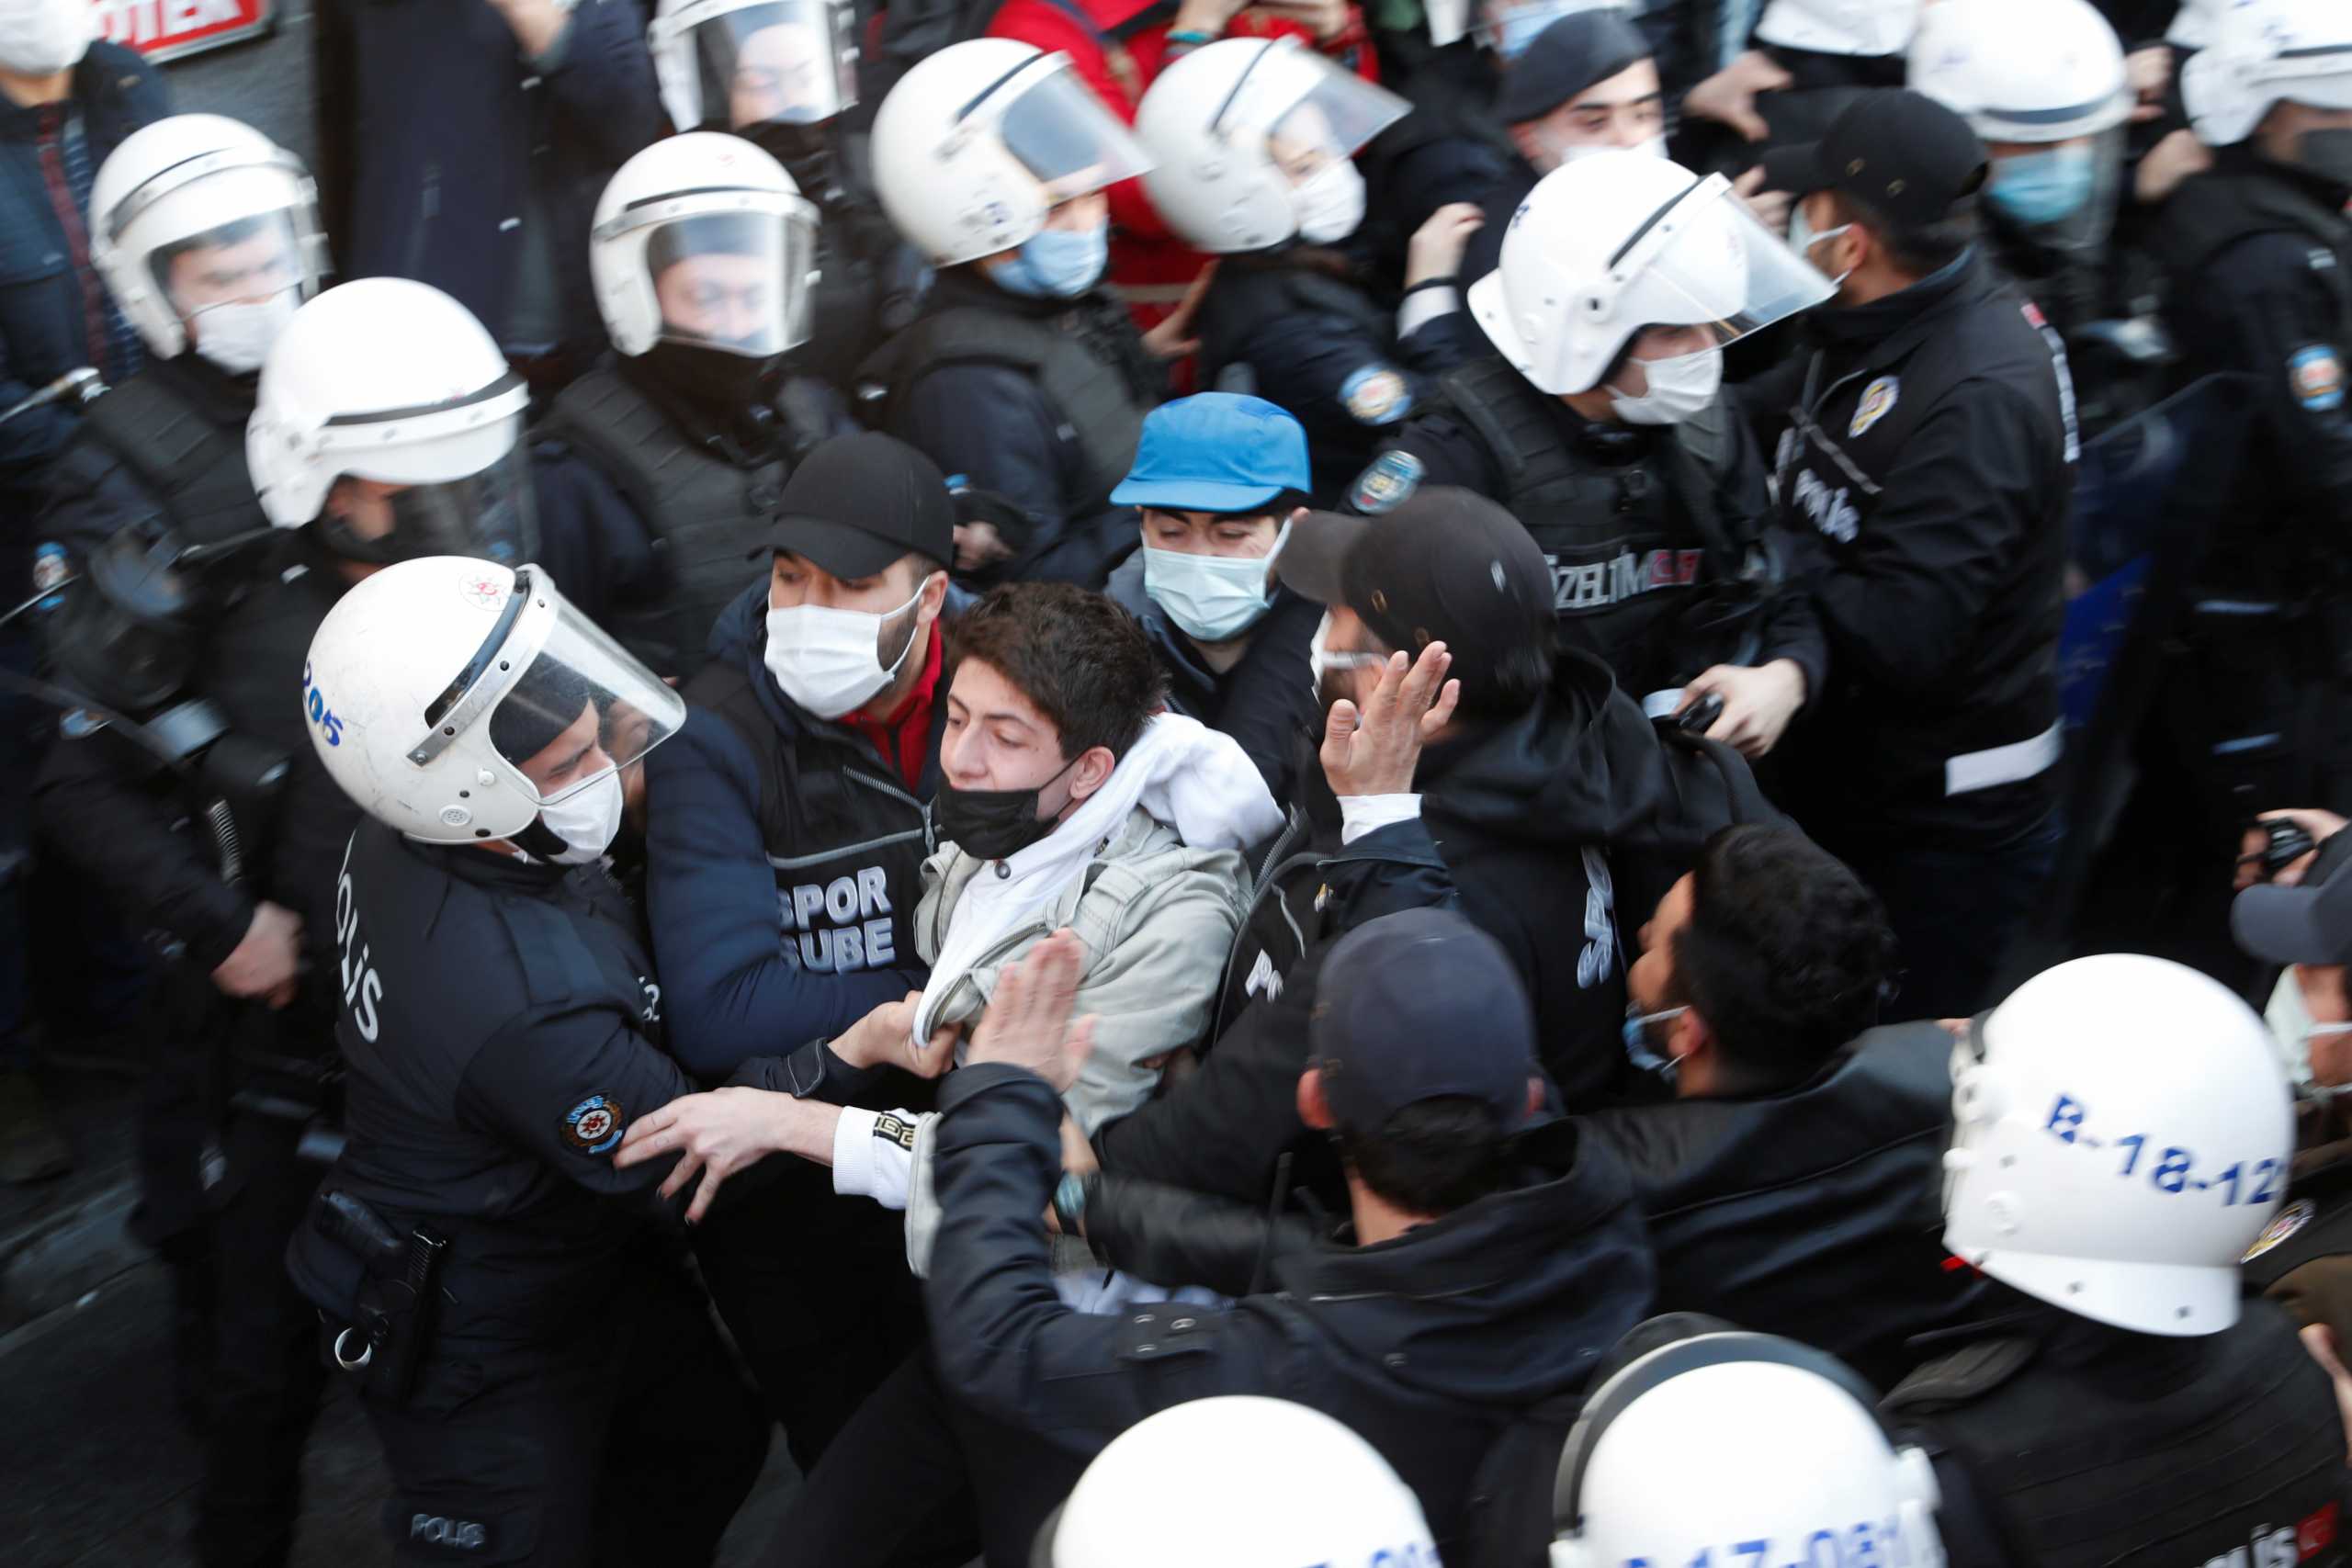 Τουρκία: 718 συλλήψεις στους φιλοκουρδικούς κύκλους